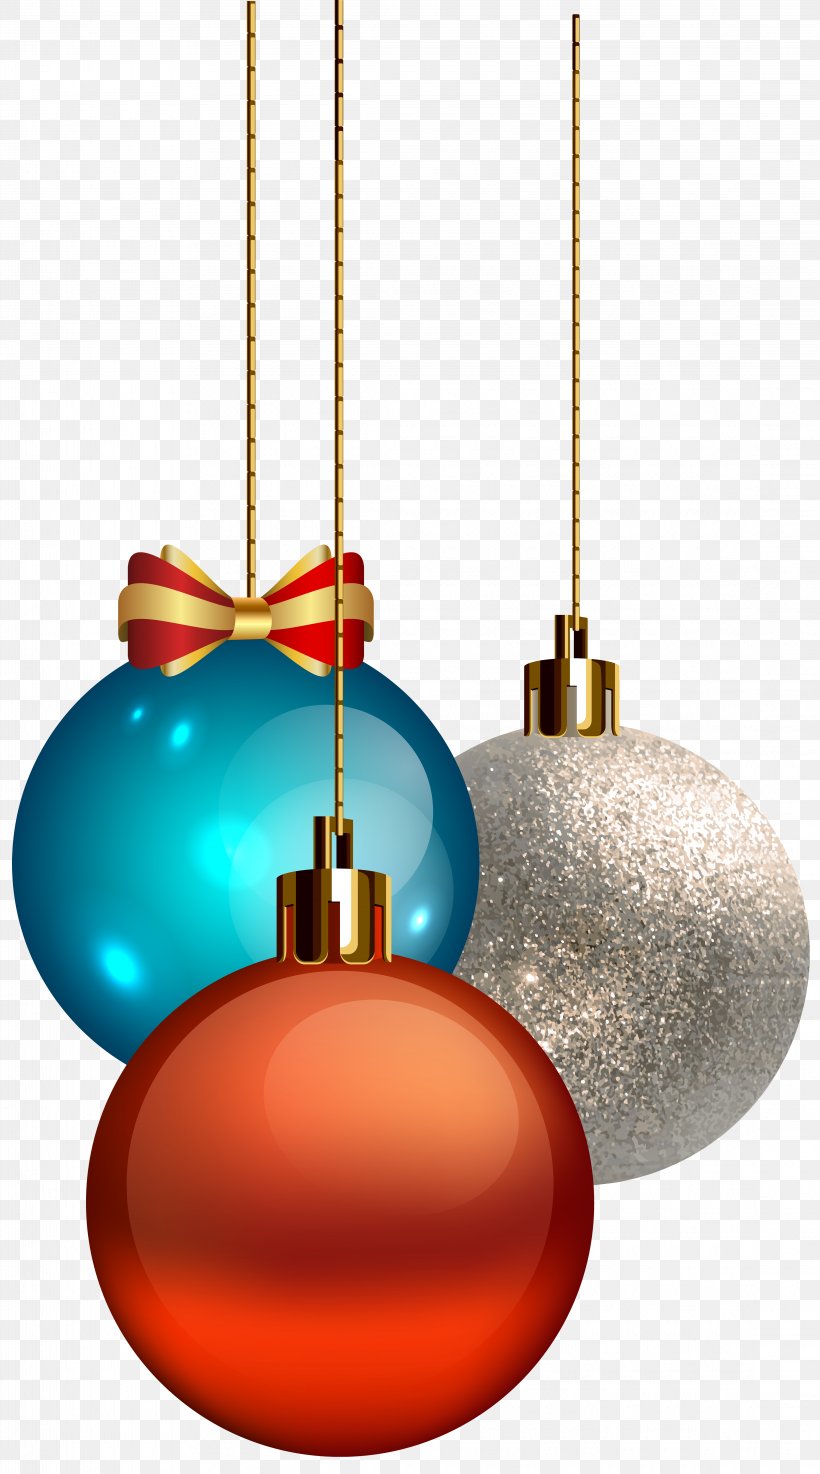 Christmas Ornament Clip Art, PNG, 4450x8000px, Christmas, Ball, Christmas And Holiday Season, Christmas Decoration, Christmas Ornament Download Free